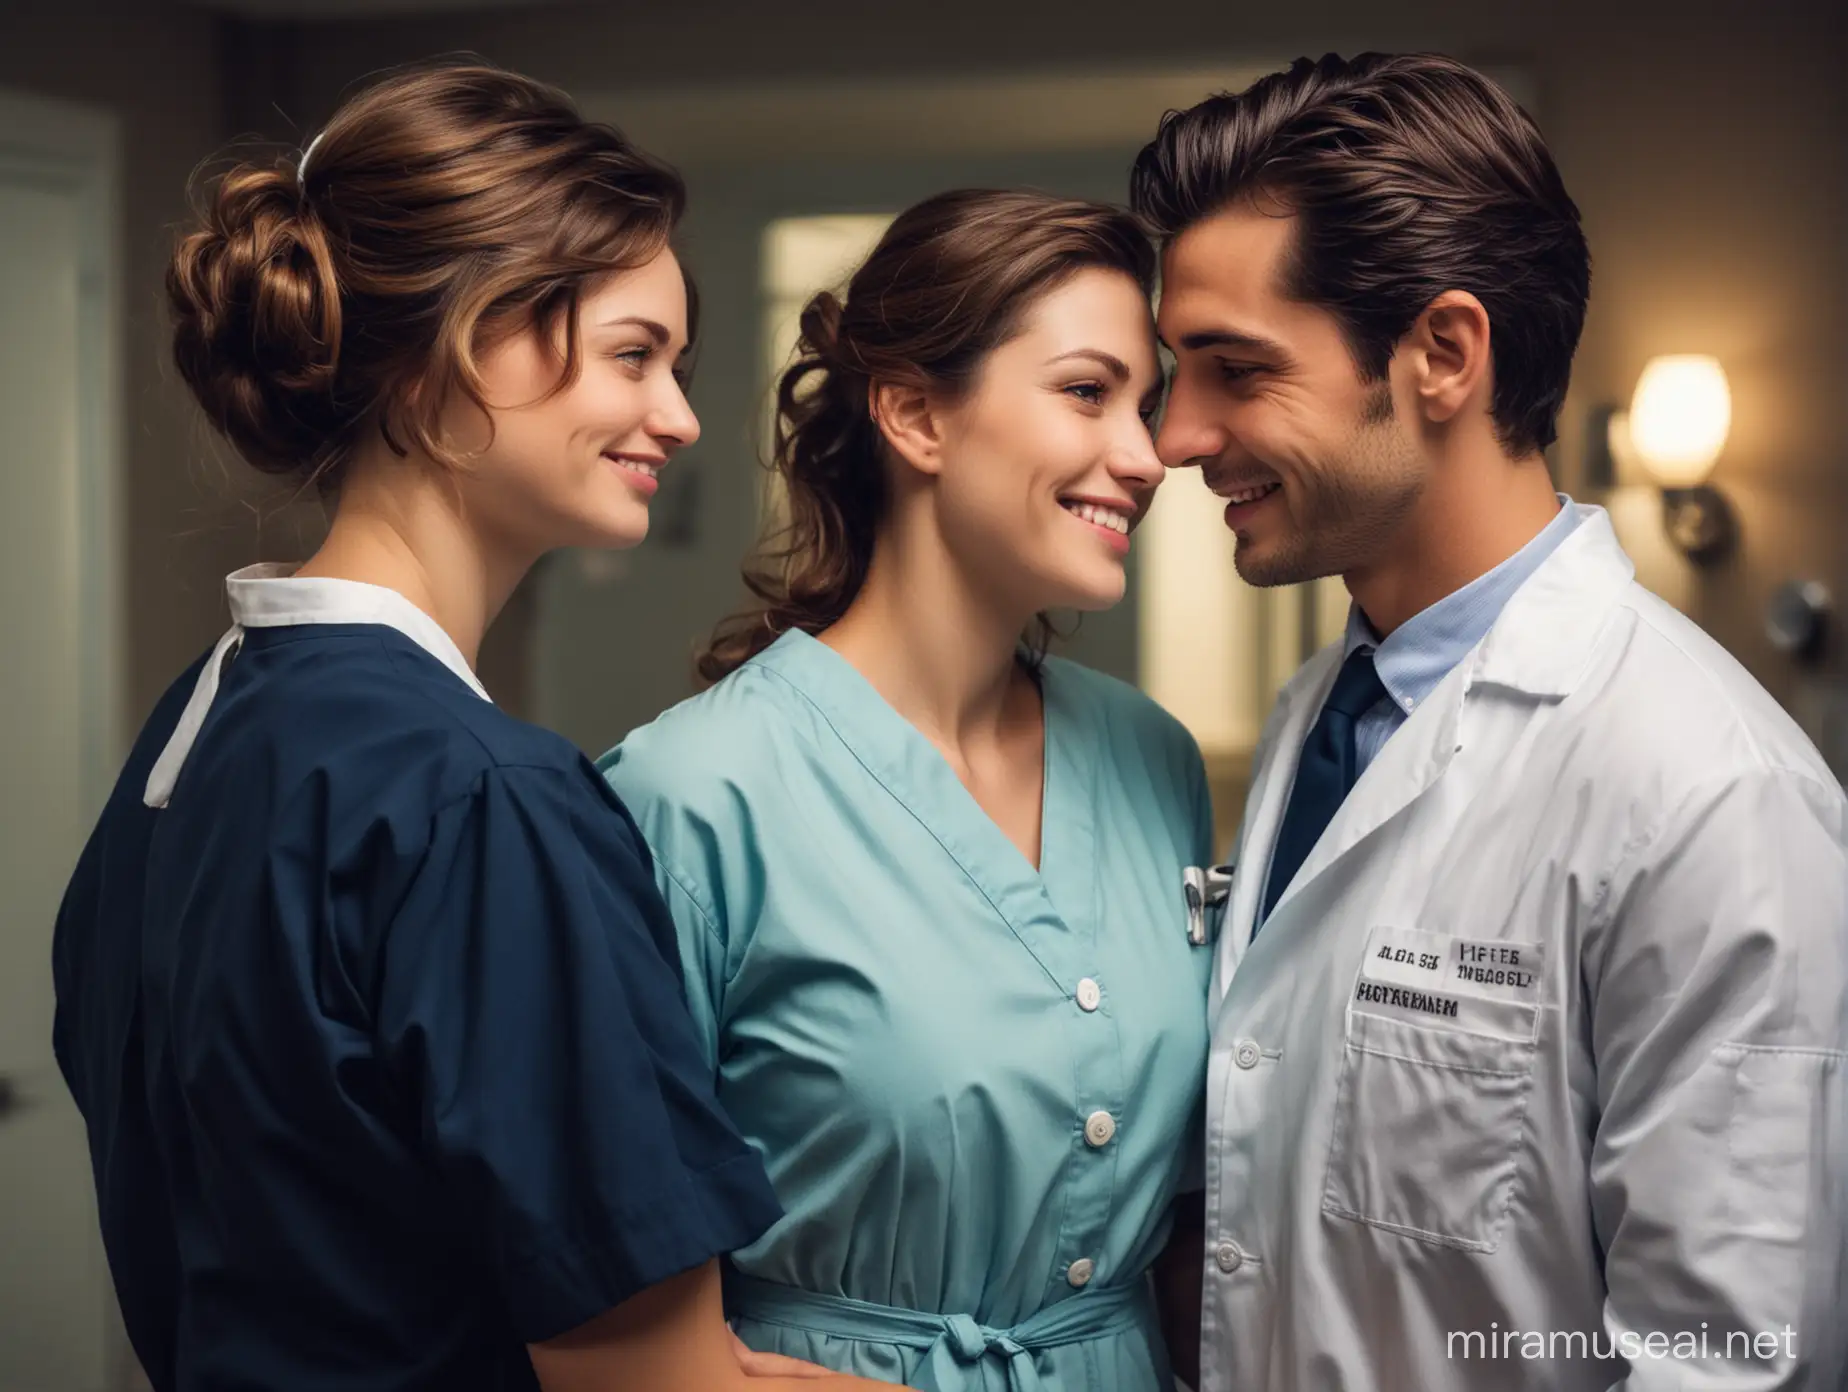 una enfermera muy bella con su uniforme antiguo y un doctor hombre joven y apuesto viéndose con amor dentro de un cuarto de hospital en la noche.